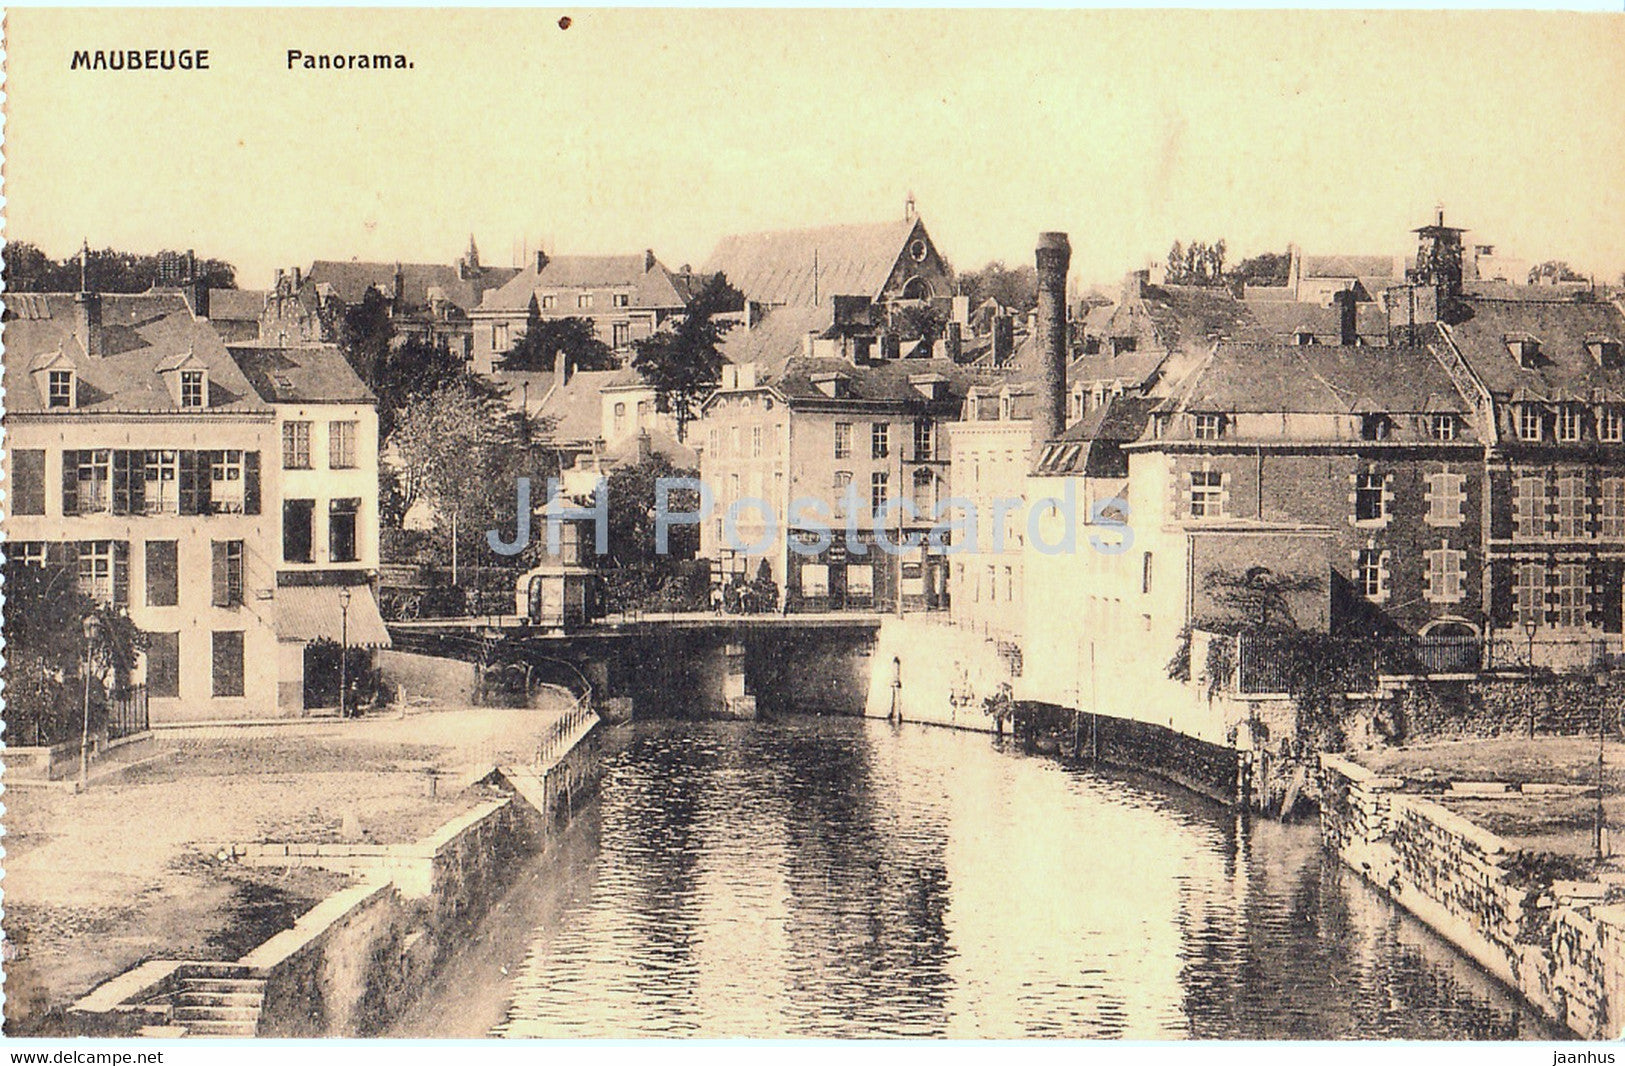 Maubeuge - Panorama - old postcard - France - unused - JH Postcards